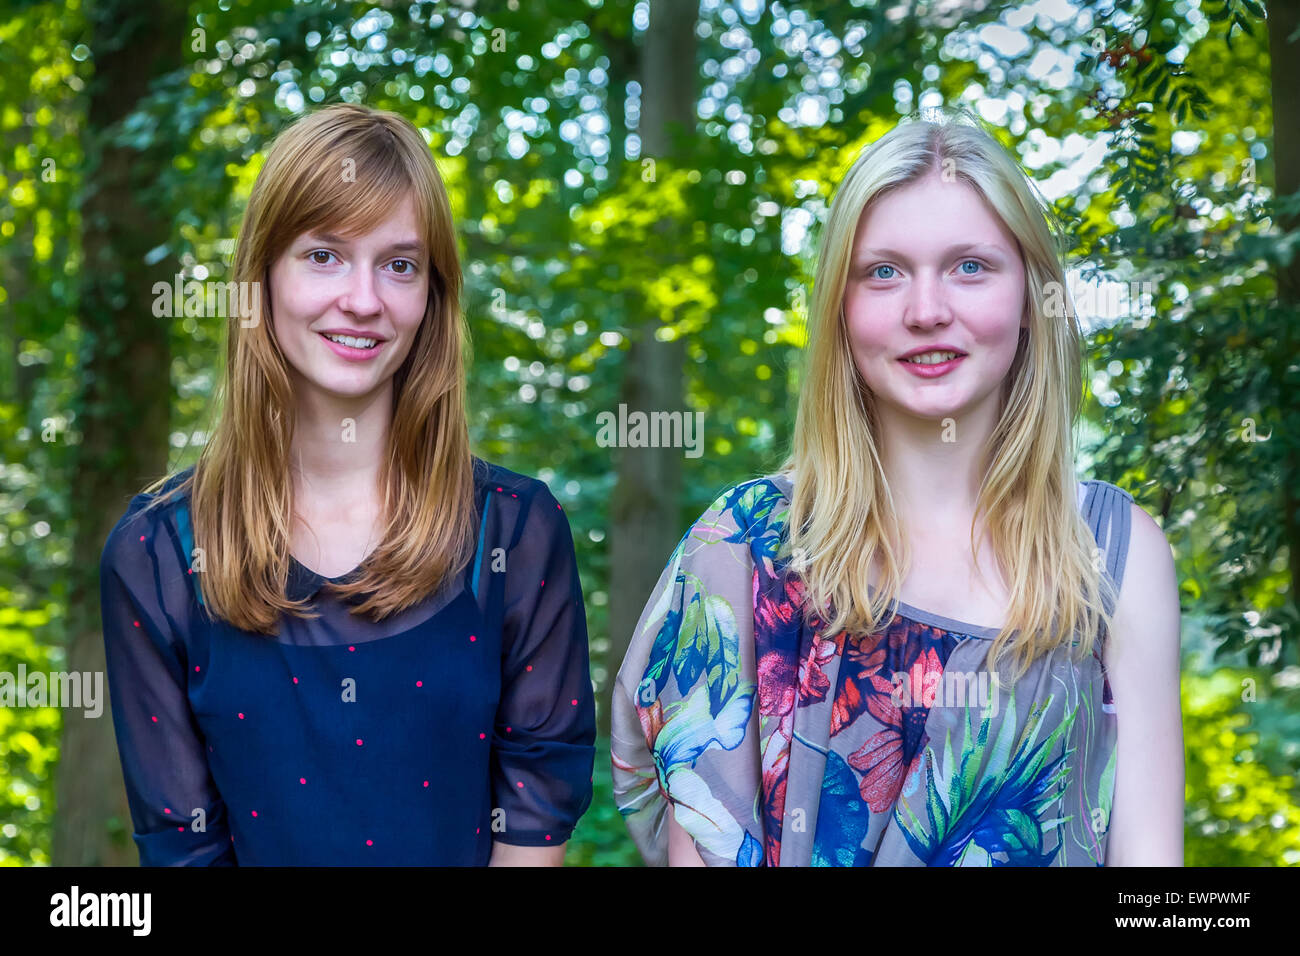 Porträt von zwei kaukasische Mädchen im Teenageralter und grünen Bäumen Hintergrund Stockfoto